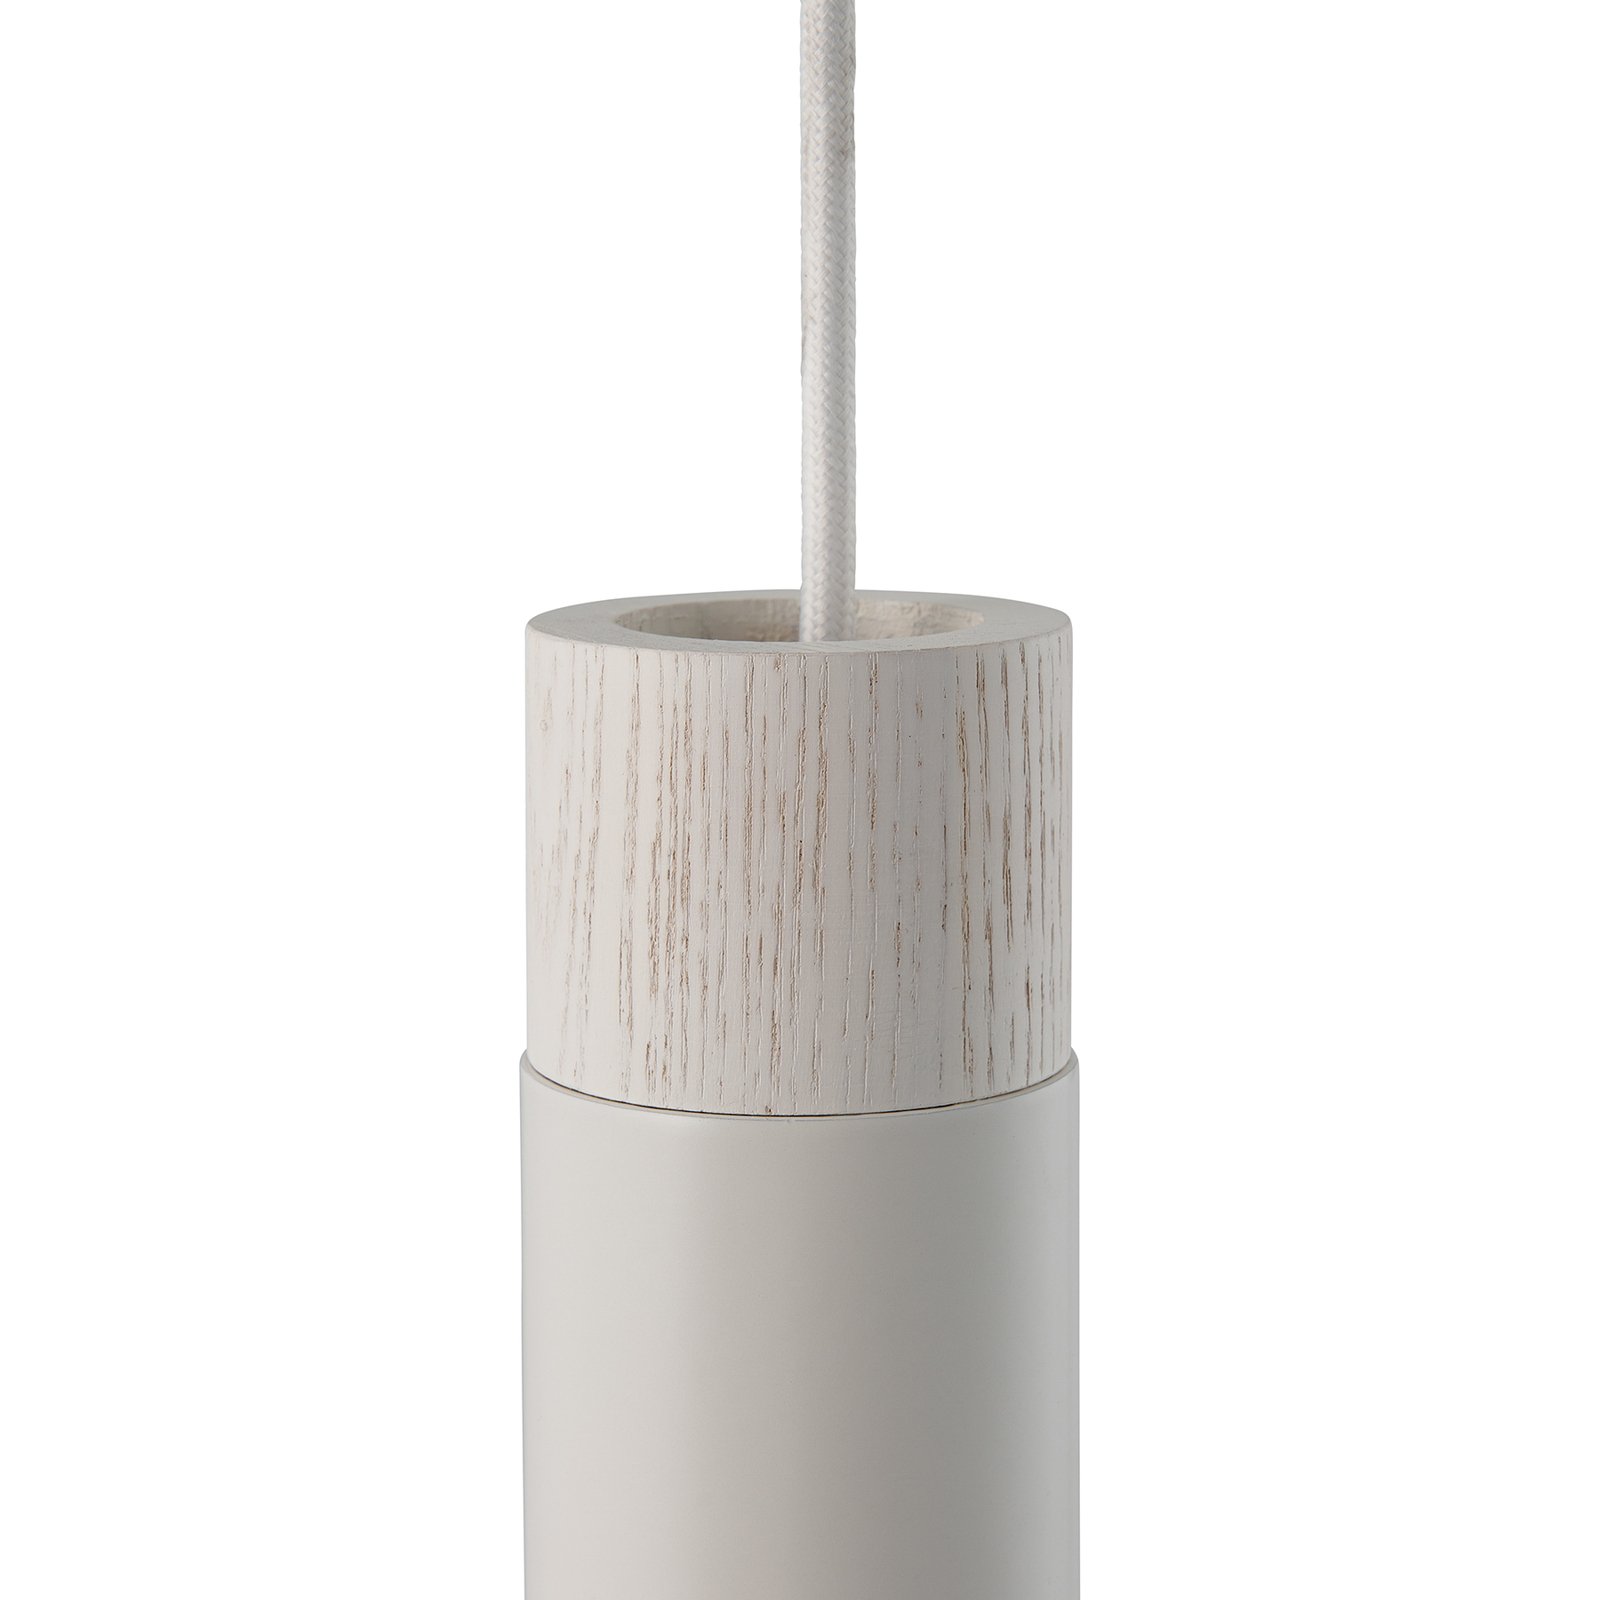 Tilo pendant light, 1-bulb, white